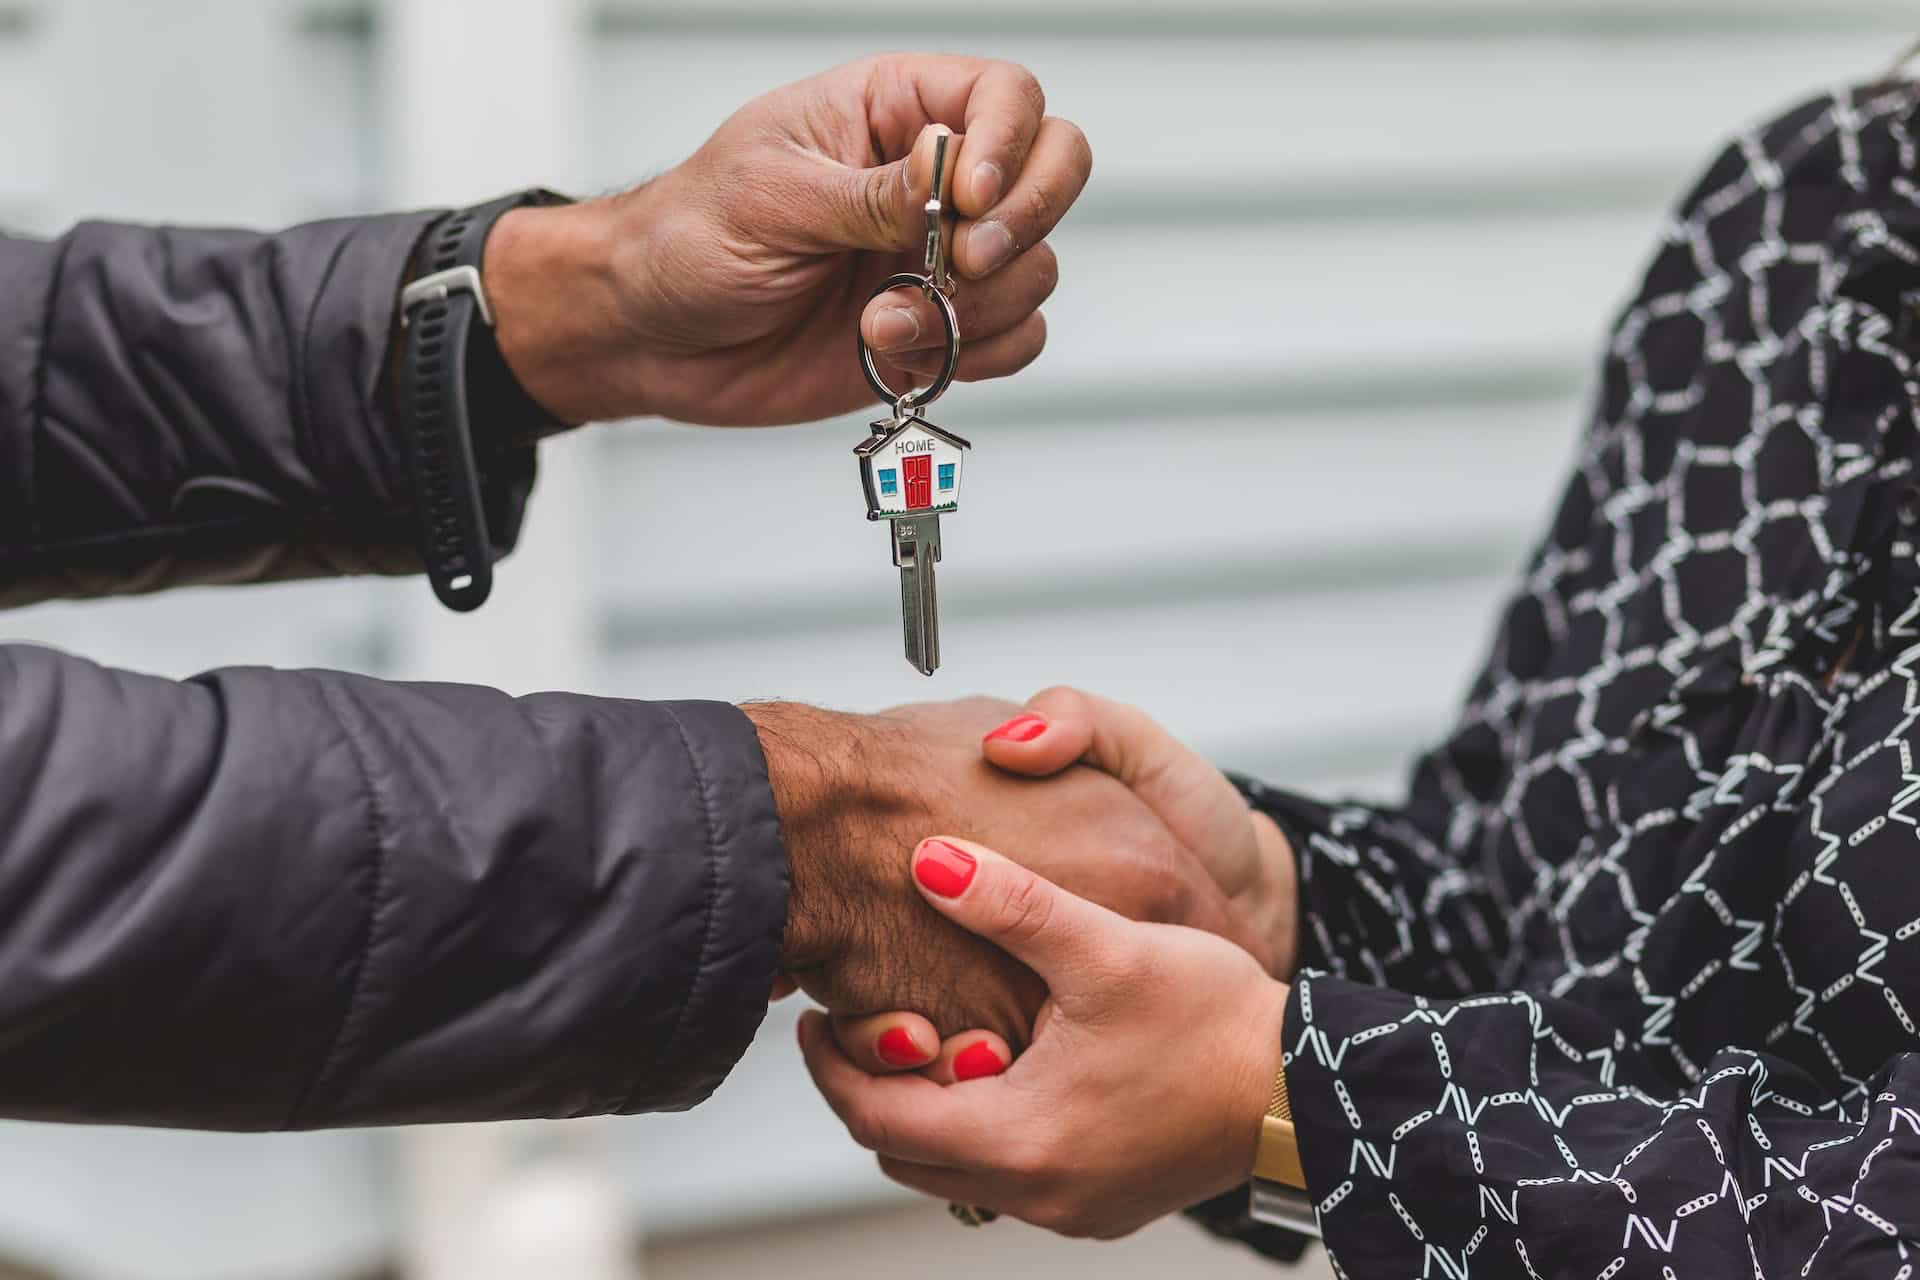 consegna delle chiavi per vendere casa